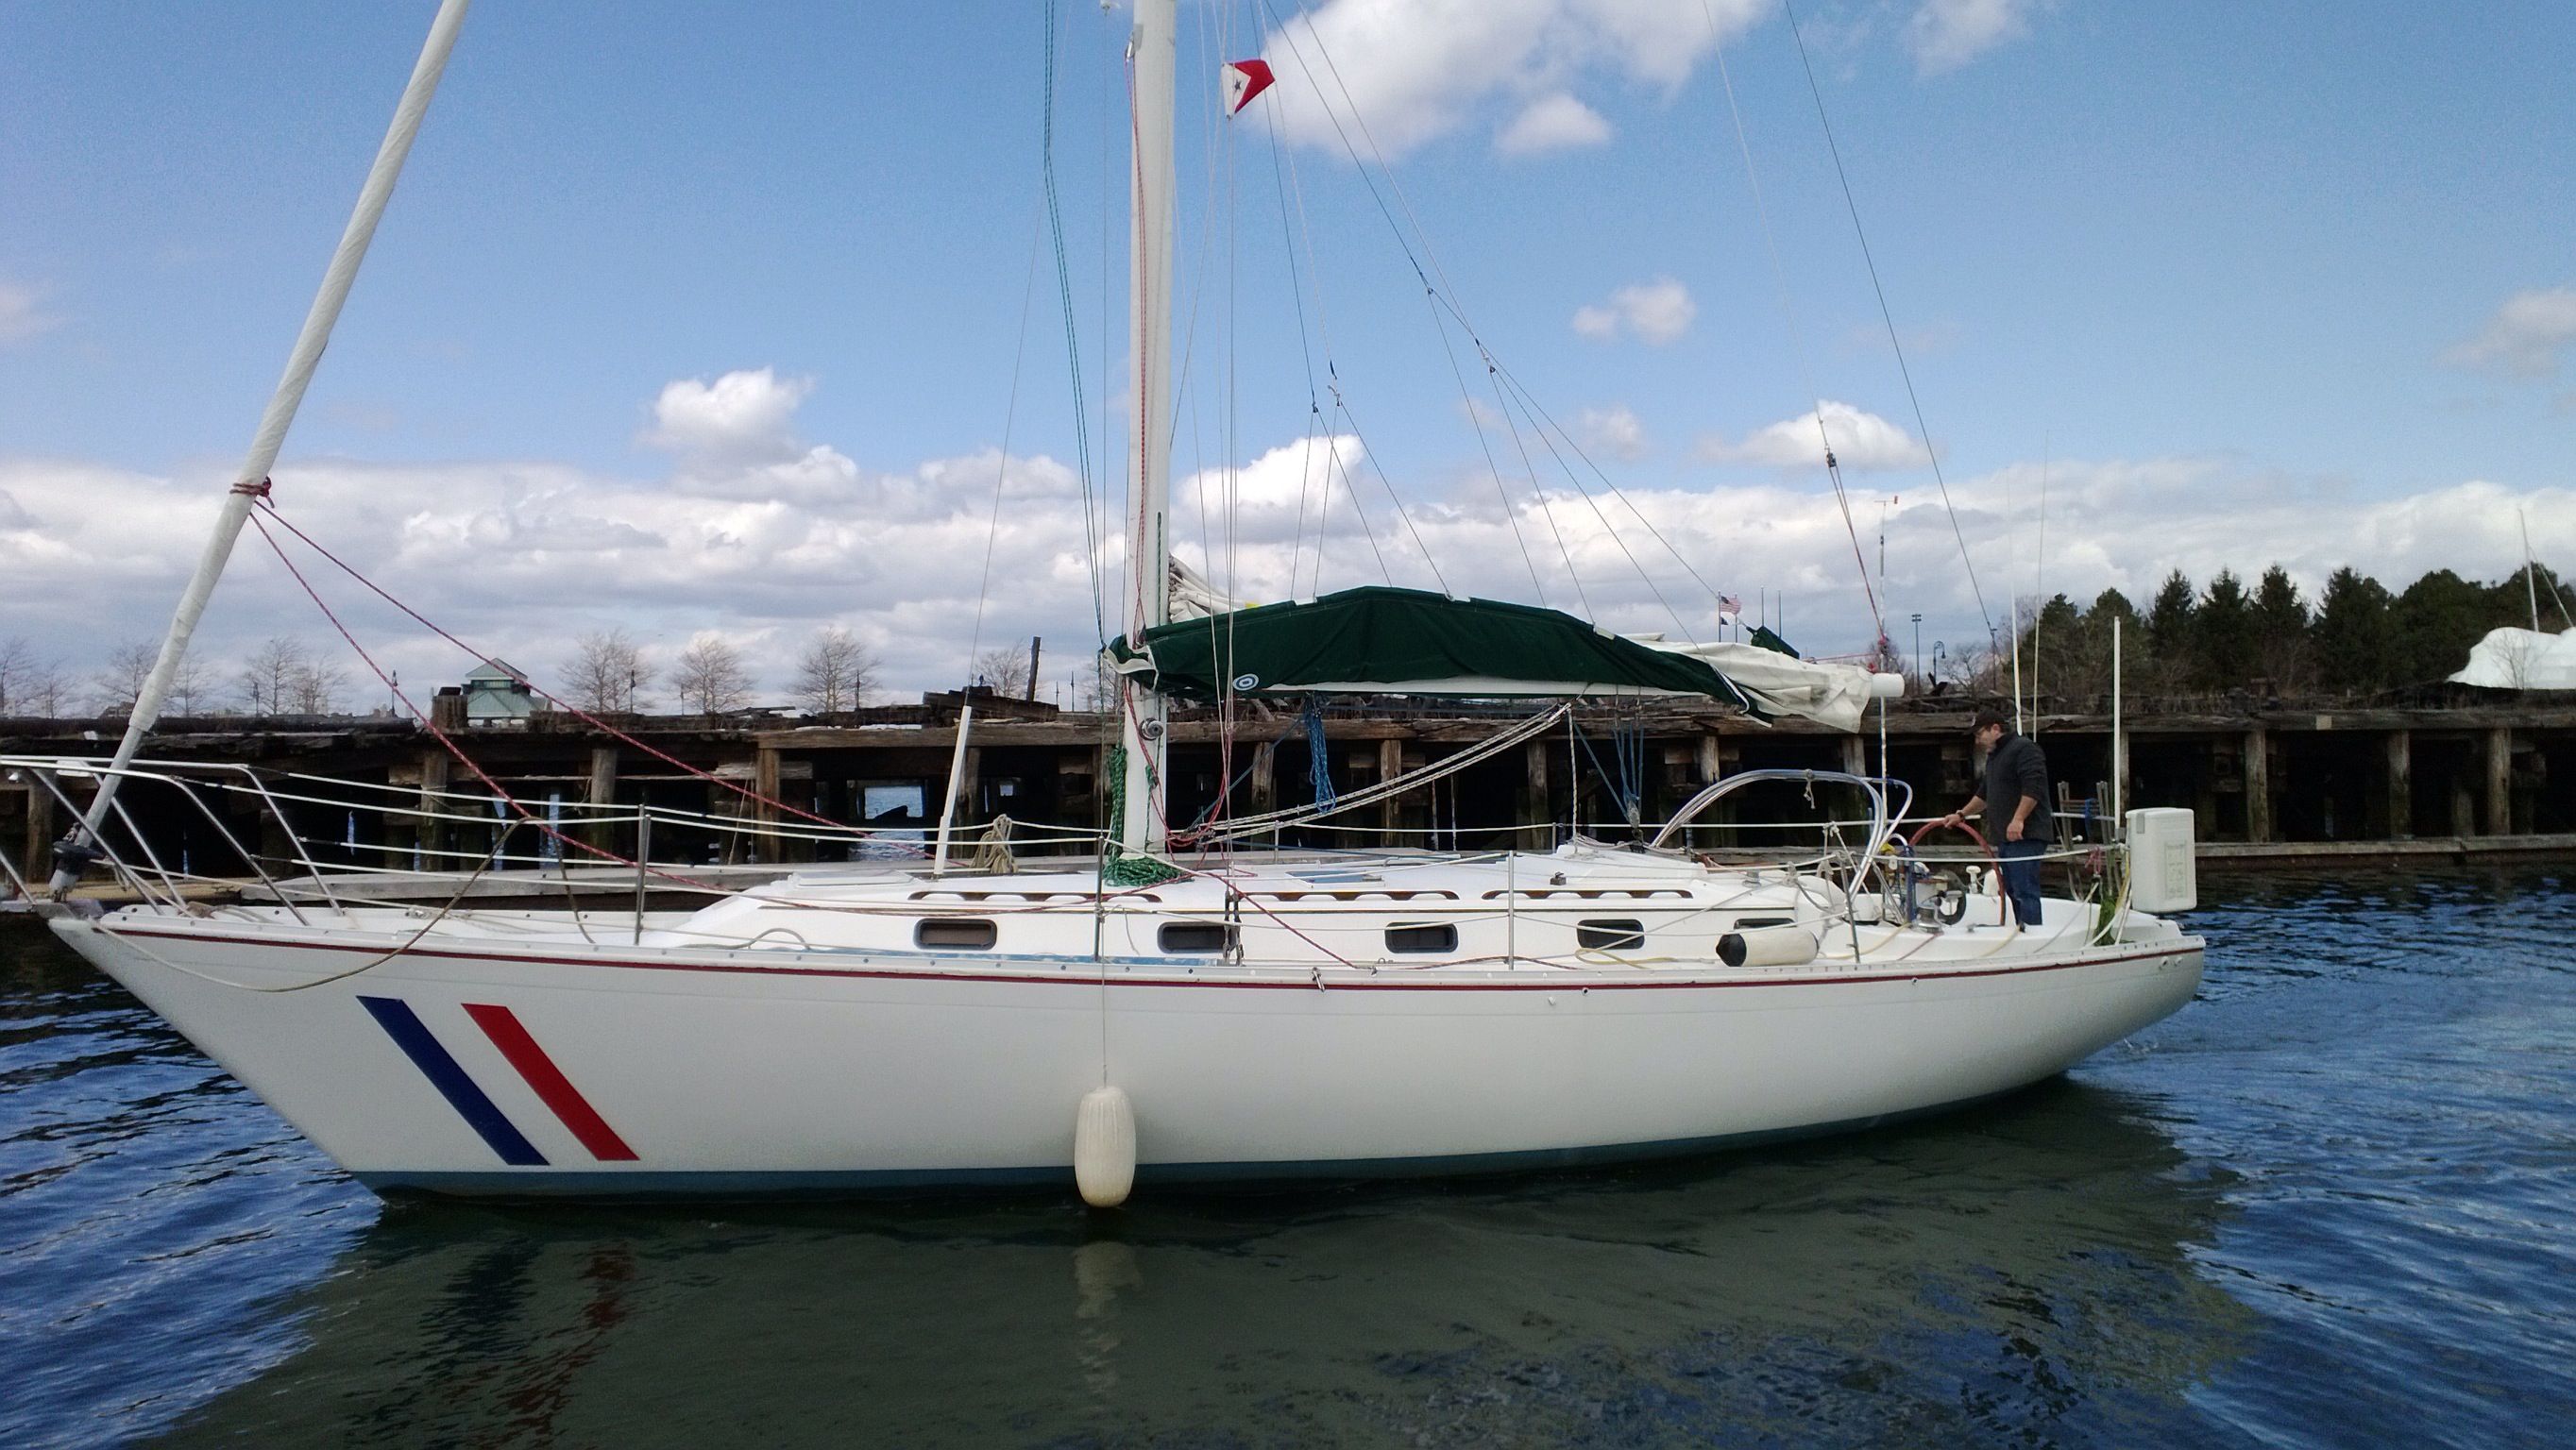 irwin 40 sailboat